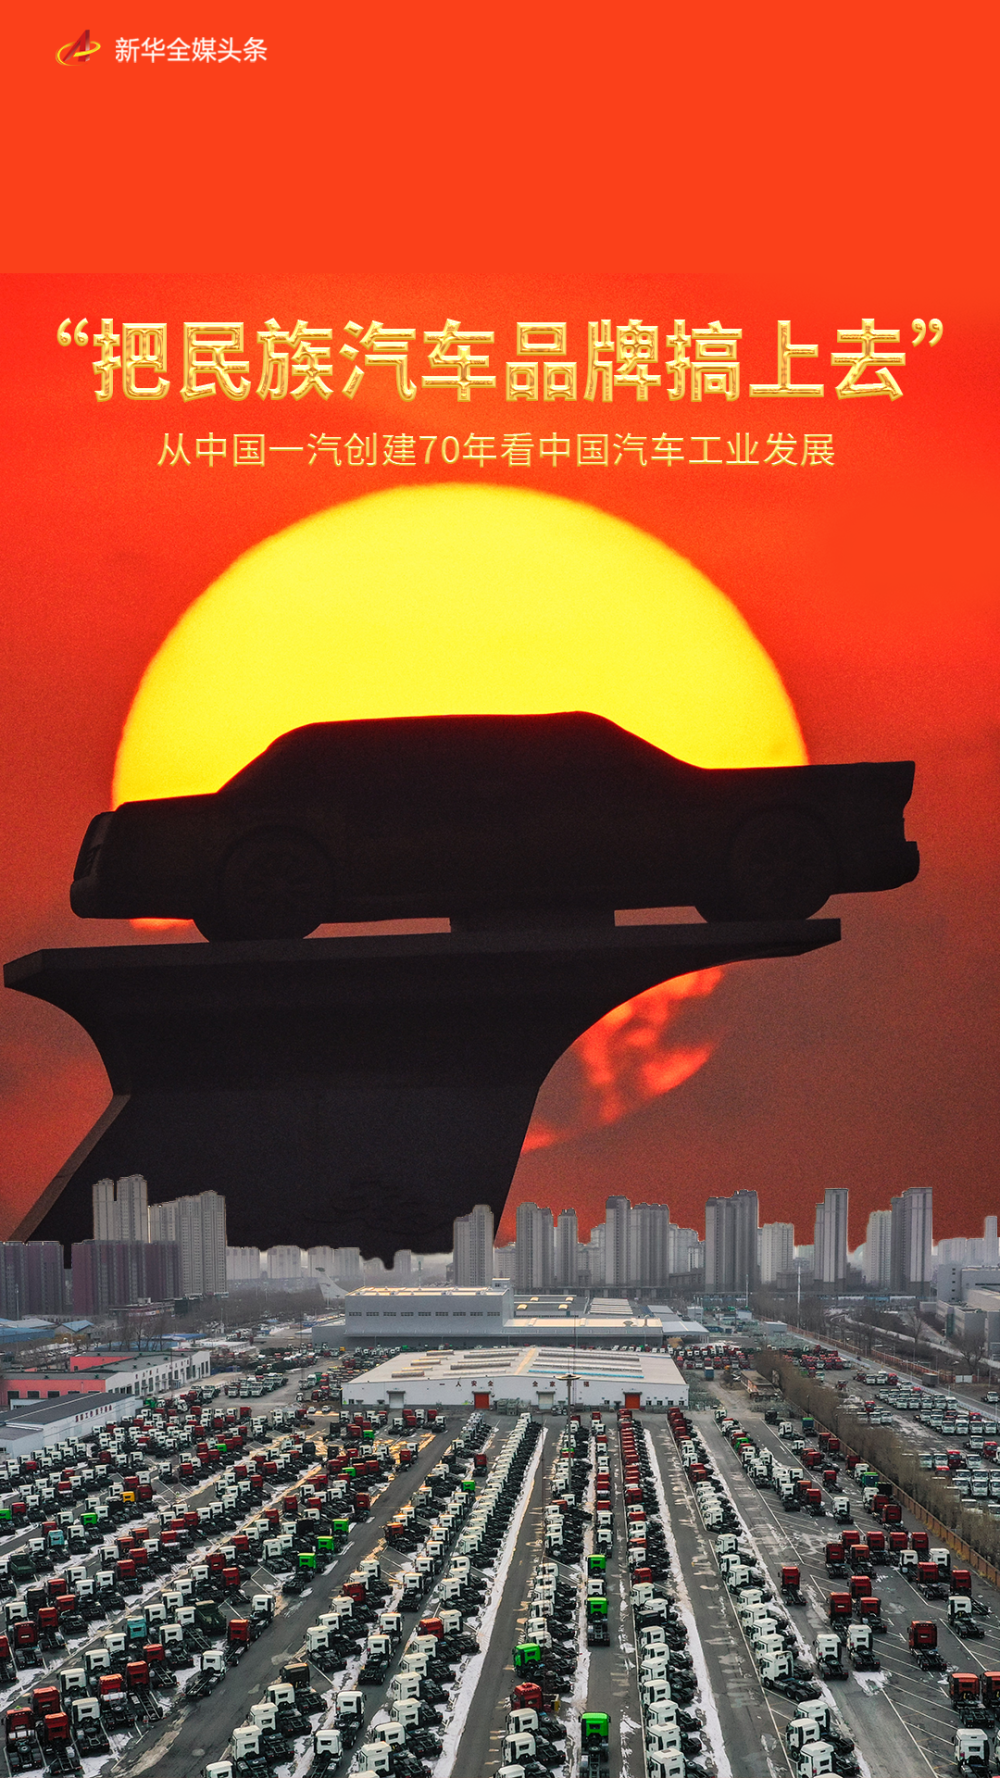 “把民族汽车品牌搞上去”——从中国一汽创建70年看中国汽车工业发展